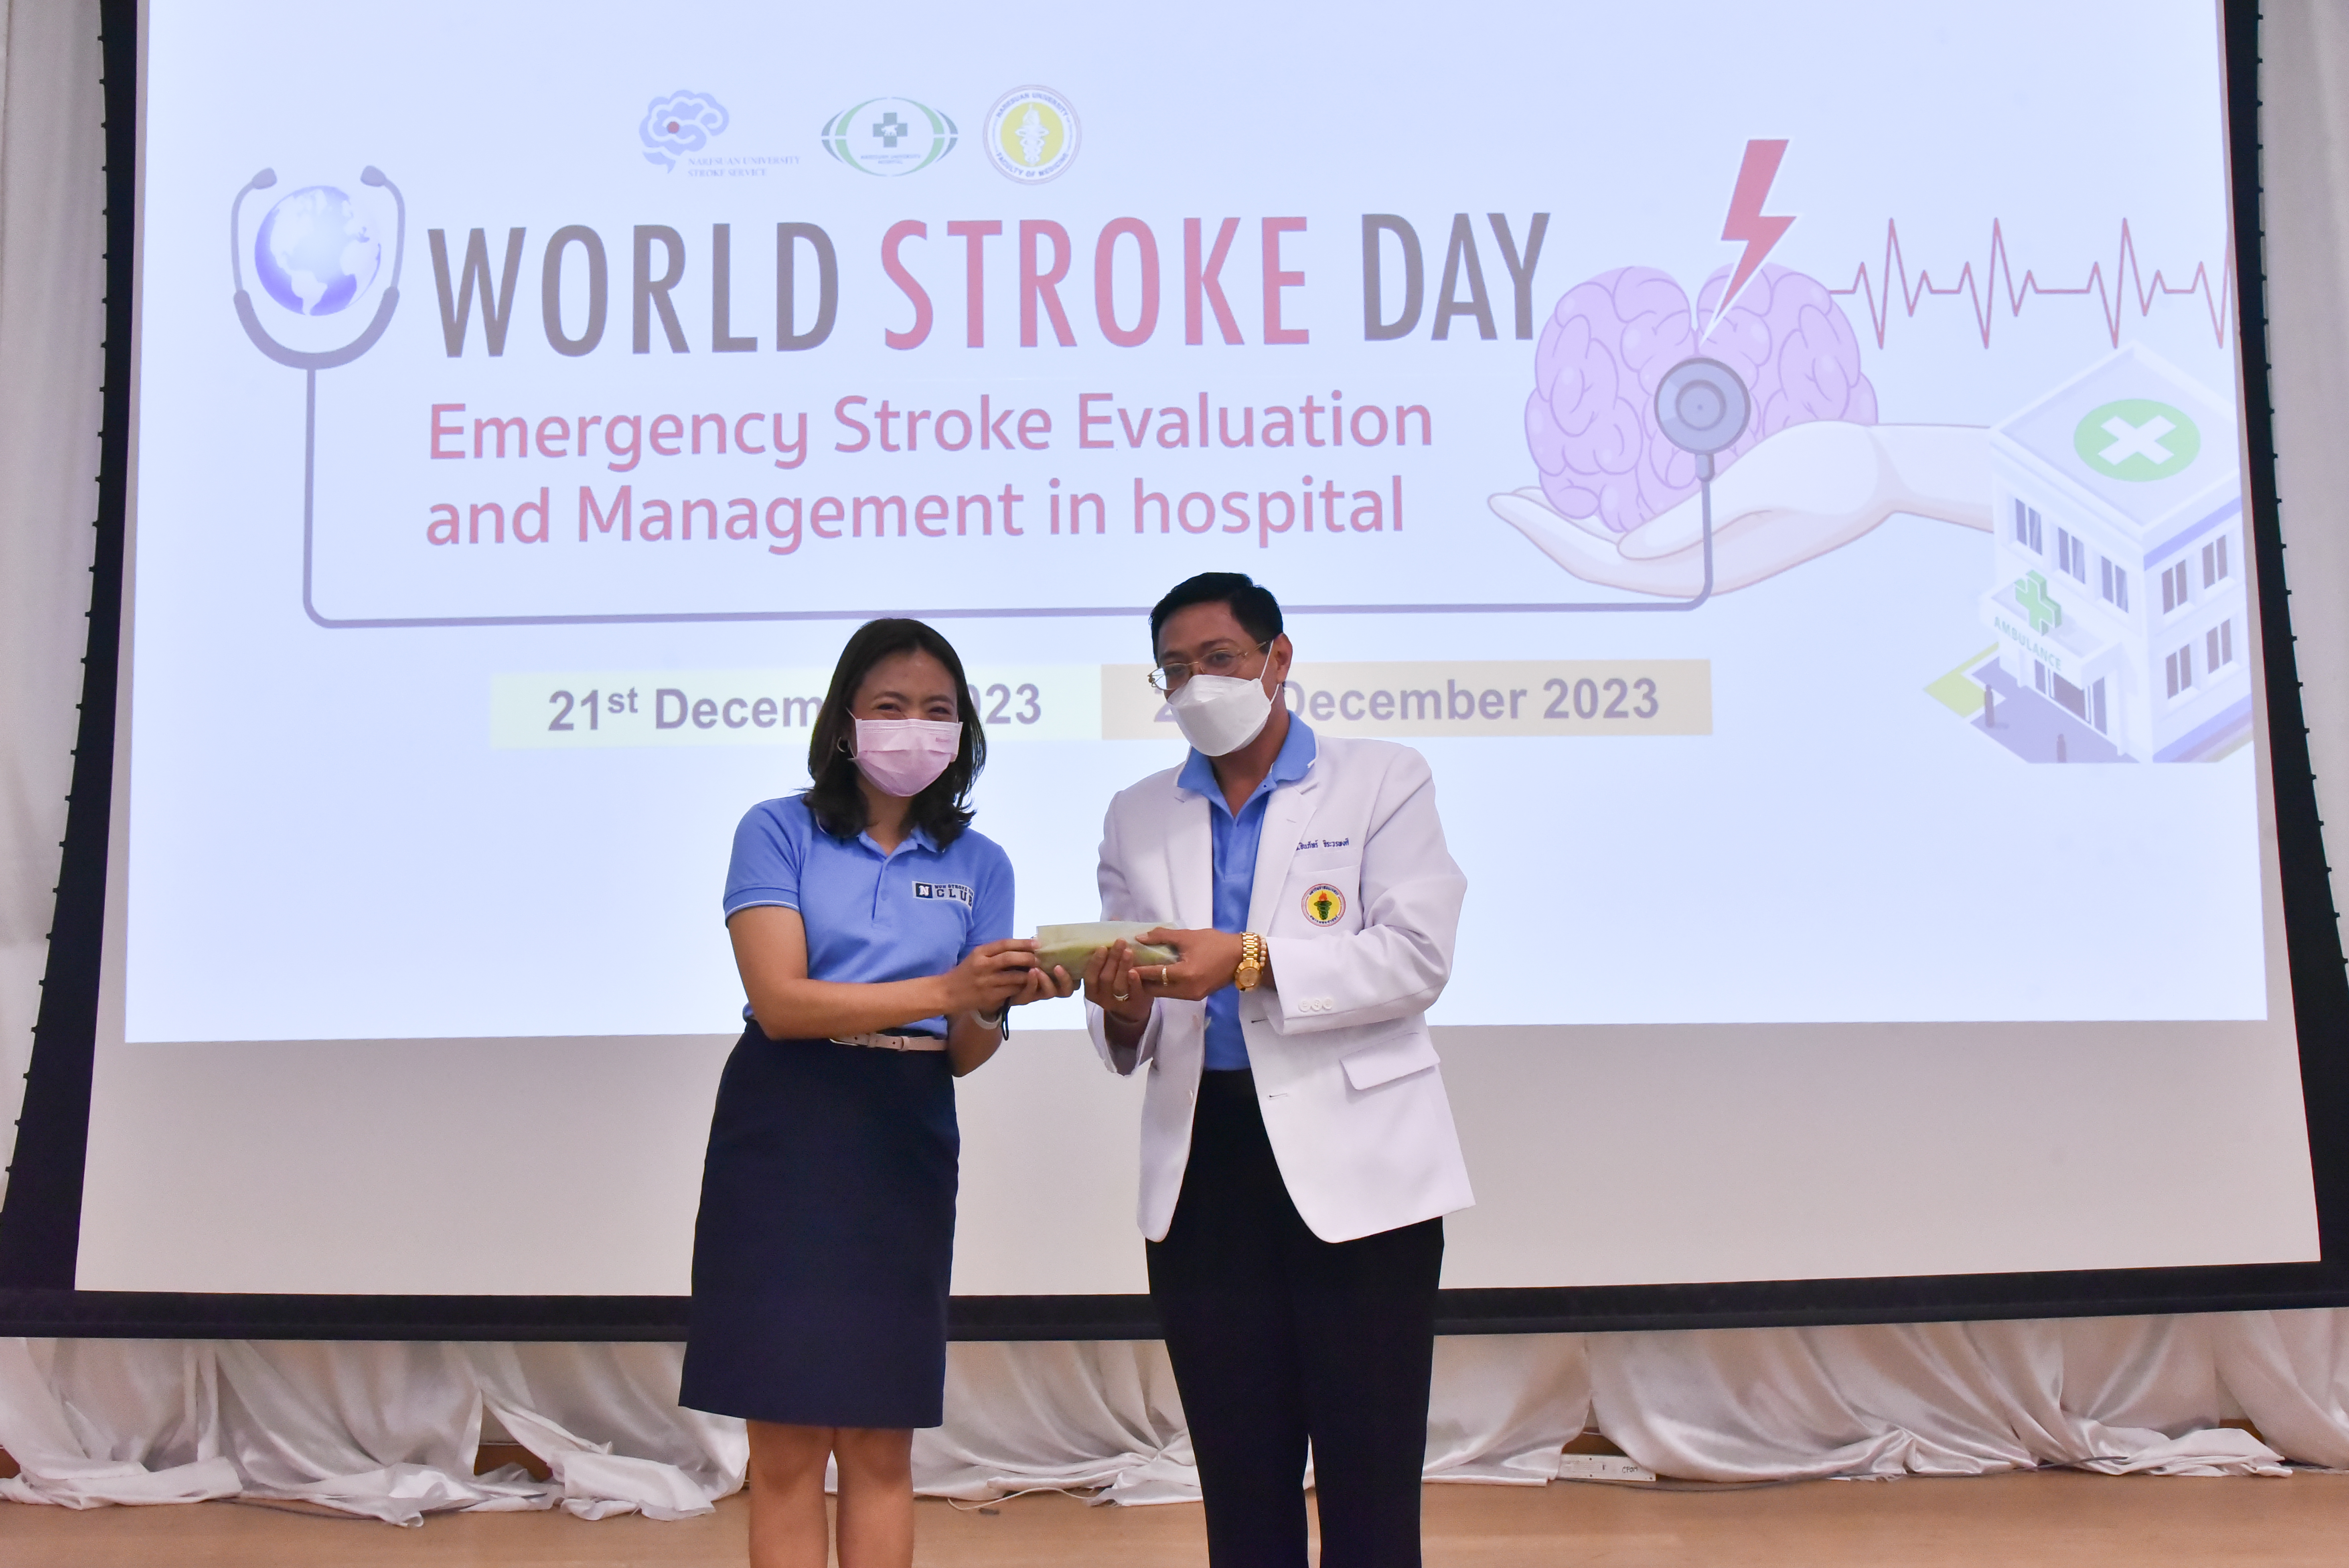 รองศาสตราจารย์นายแพทย์ชินภัทร์ จิระวรพงศ์ ได้รับเชิญให้เป็นวิทยากรในโครงการ World Stroke Day 2023 ภายใต้หัวข้อ “Emergency Stroke Evaluation and Management in hospital”